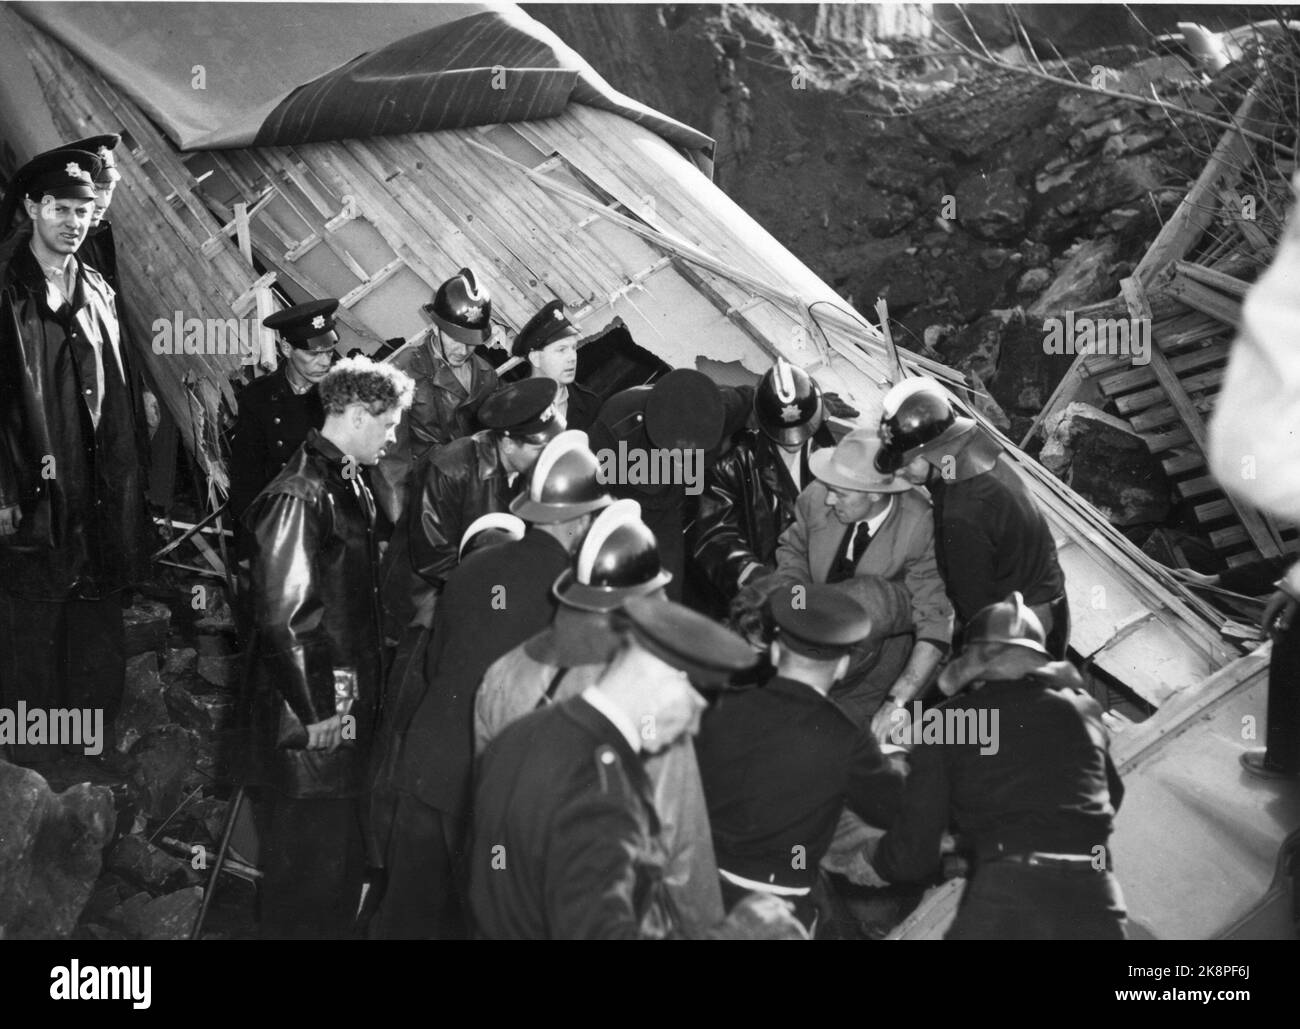 Oslo 1953-10-07 der Unfall in Bekkelaget, bei dem fünf Menschen ums Leben kamen. Hier werden Überlebende aus dem Bus gerettet. Vier der fünf Verstorbenen waren im Bus. Foto: Jan Stage / NTB Archive / NTB Stockfoto